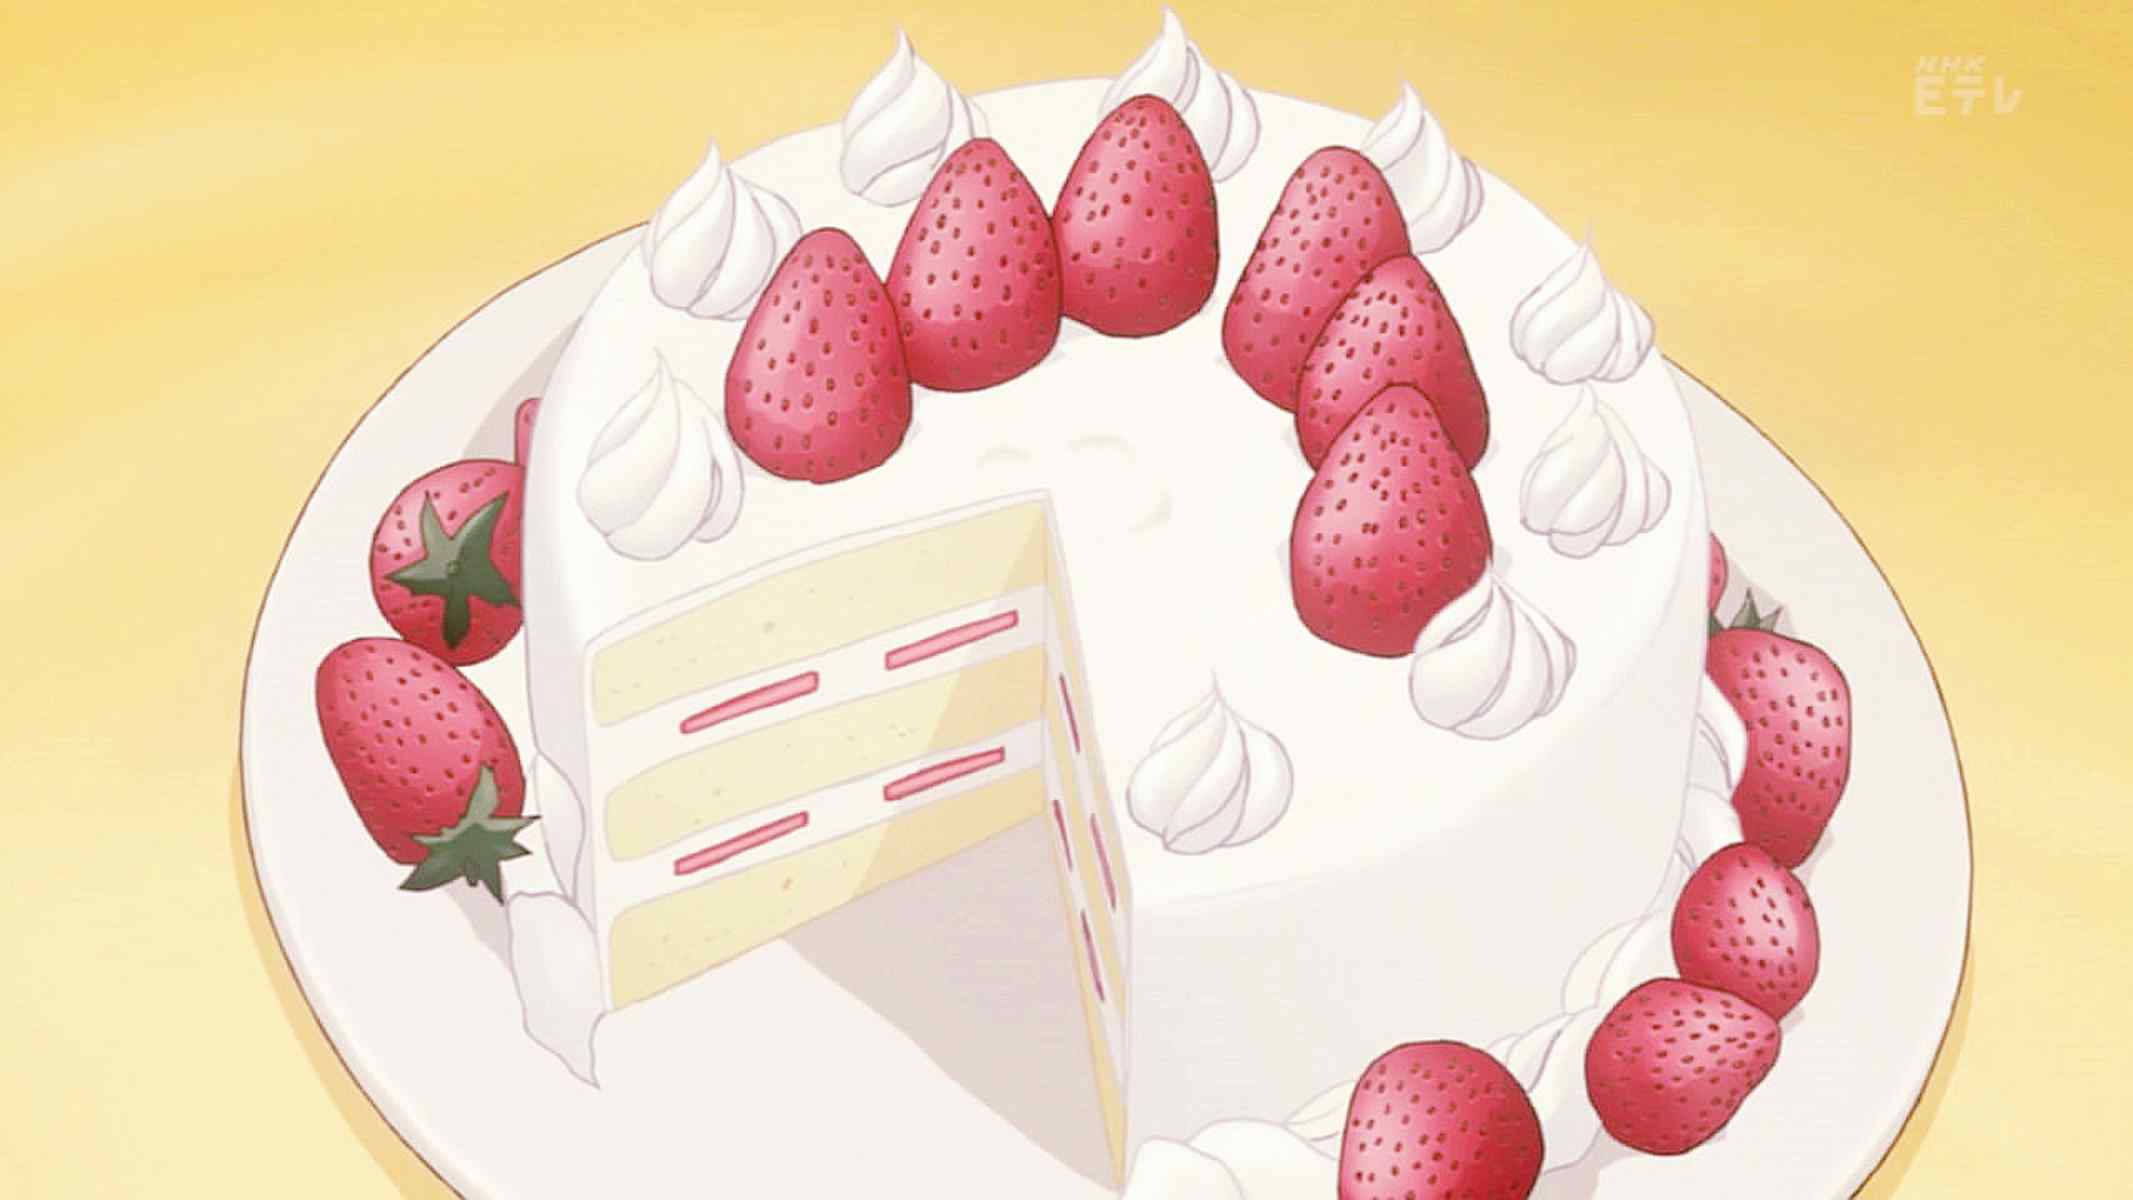 动漫美食二次元草莓奶油蛋糕图片桌面壁纸